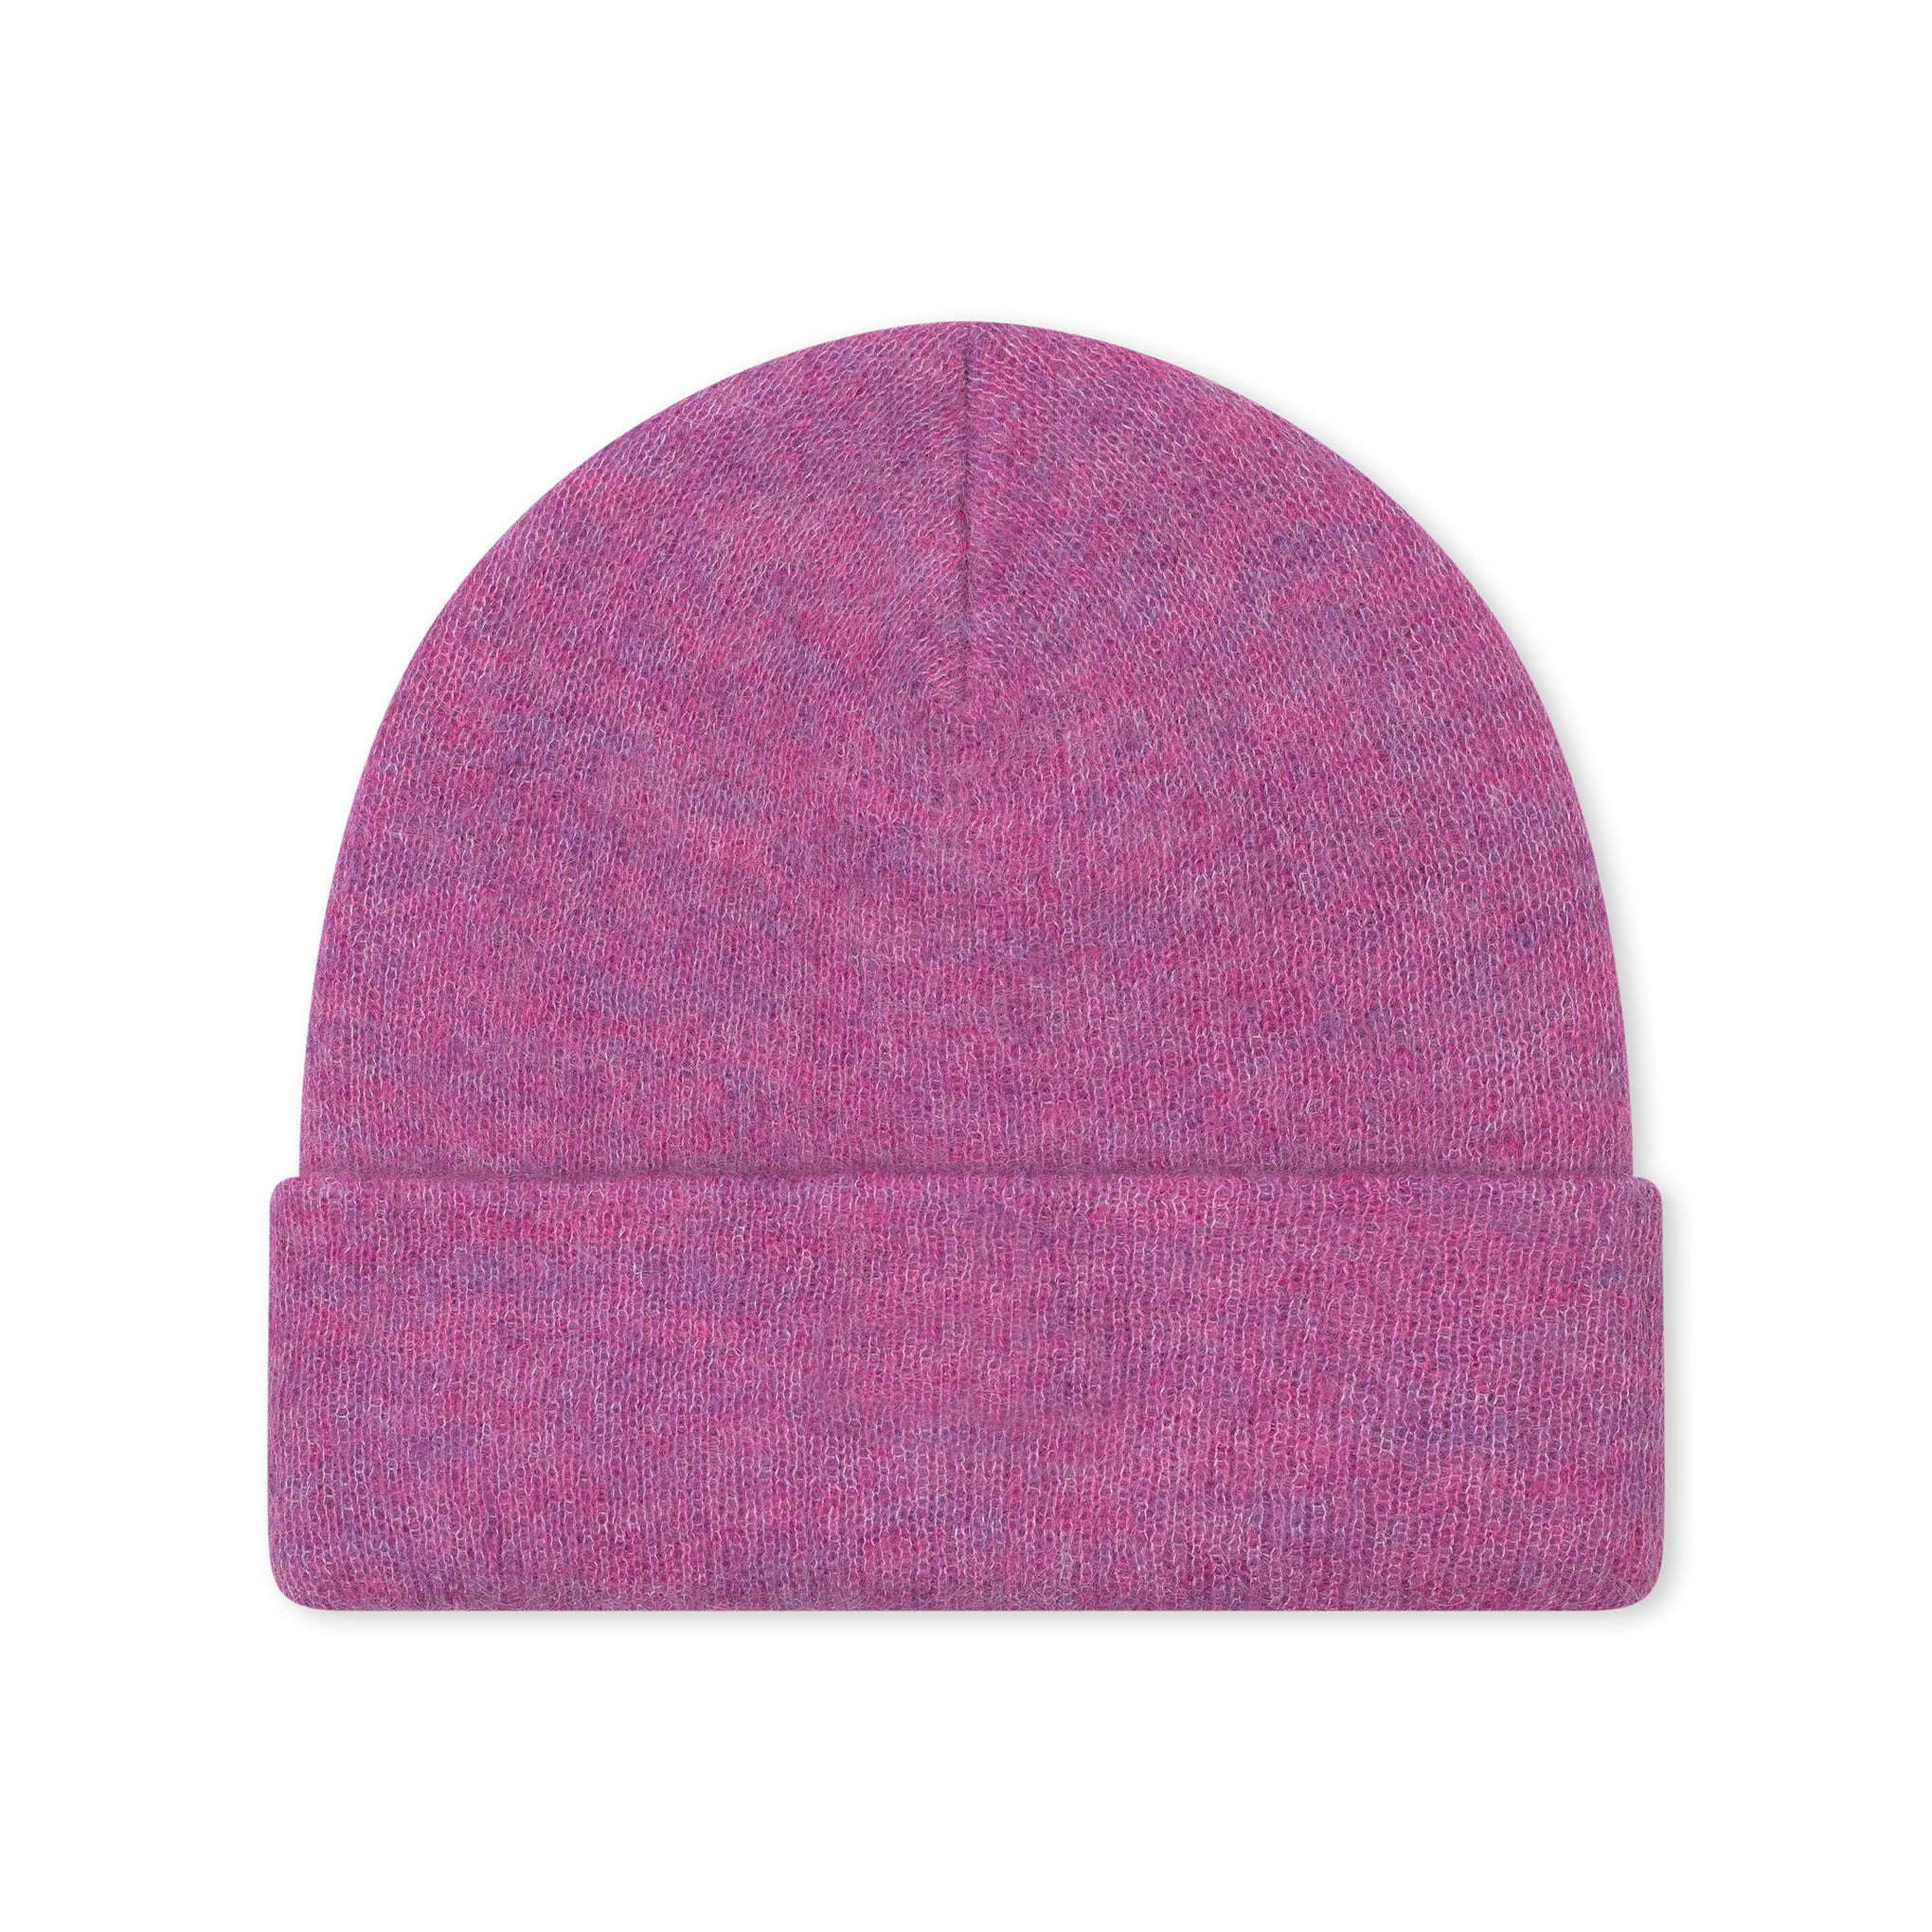 高级马海毛毛线帽 粉色 (FW16)